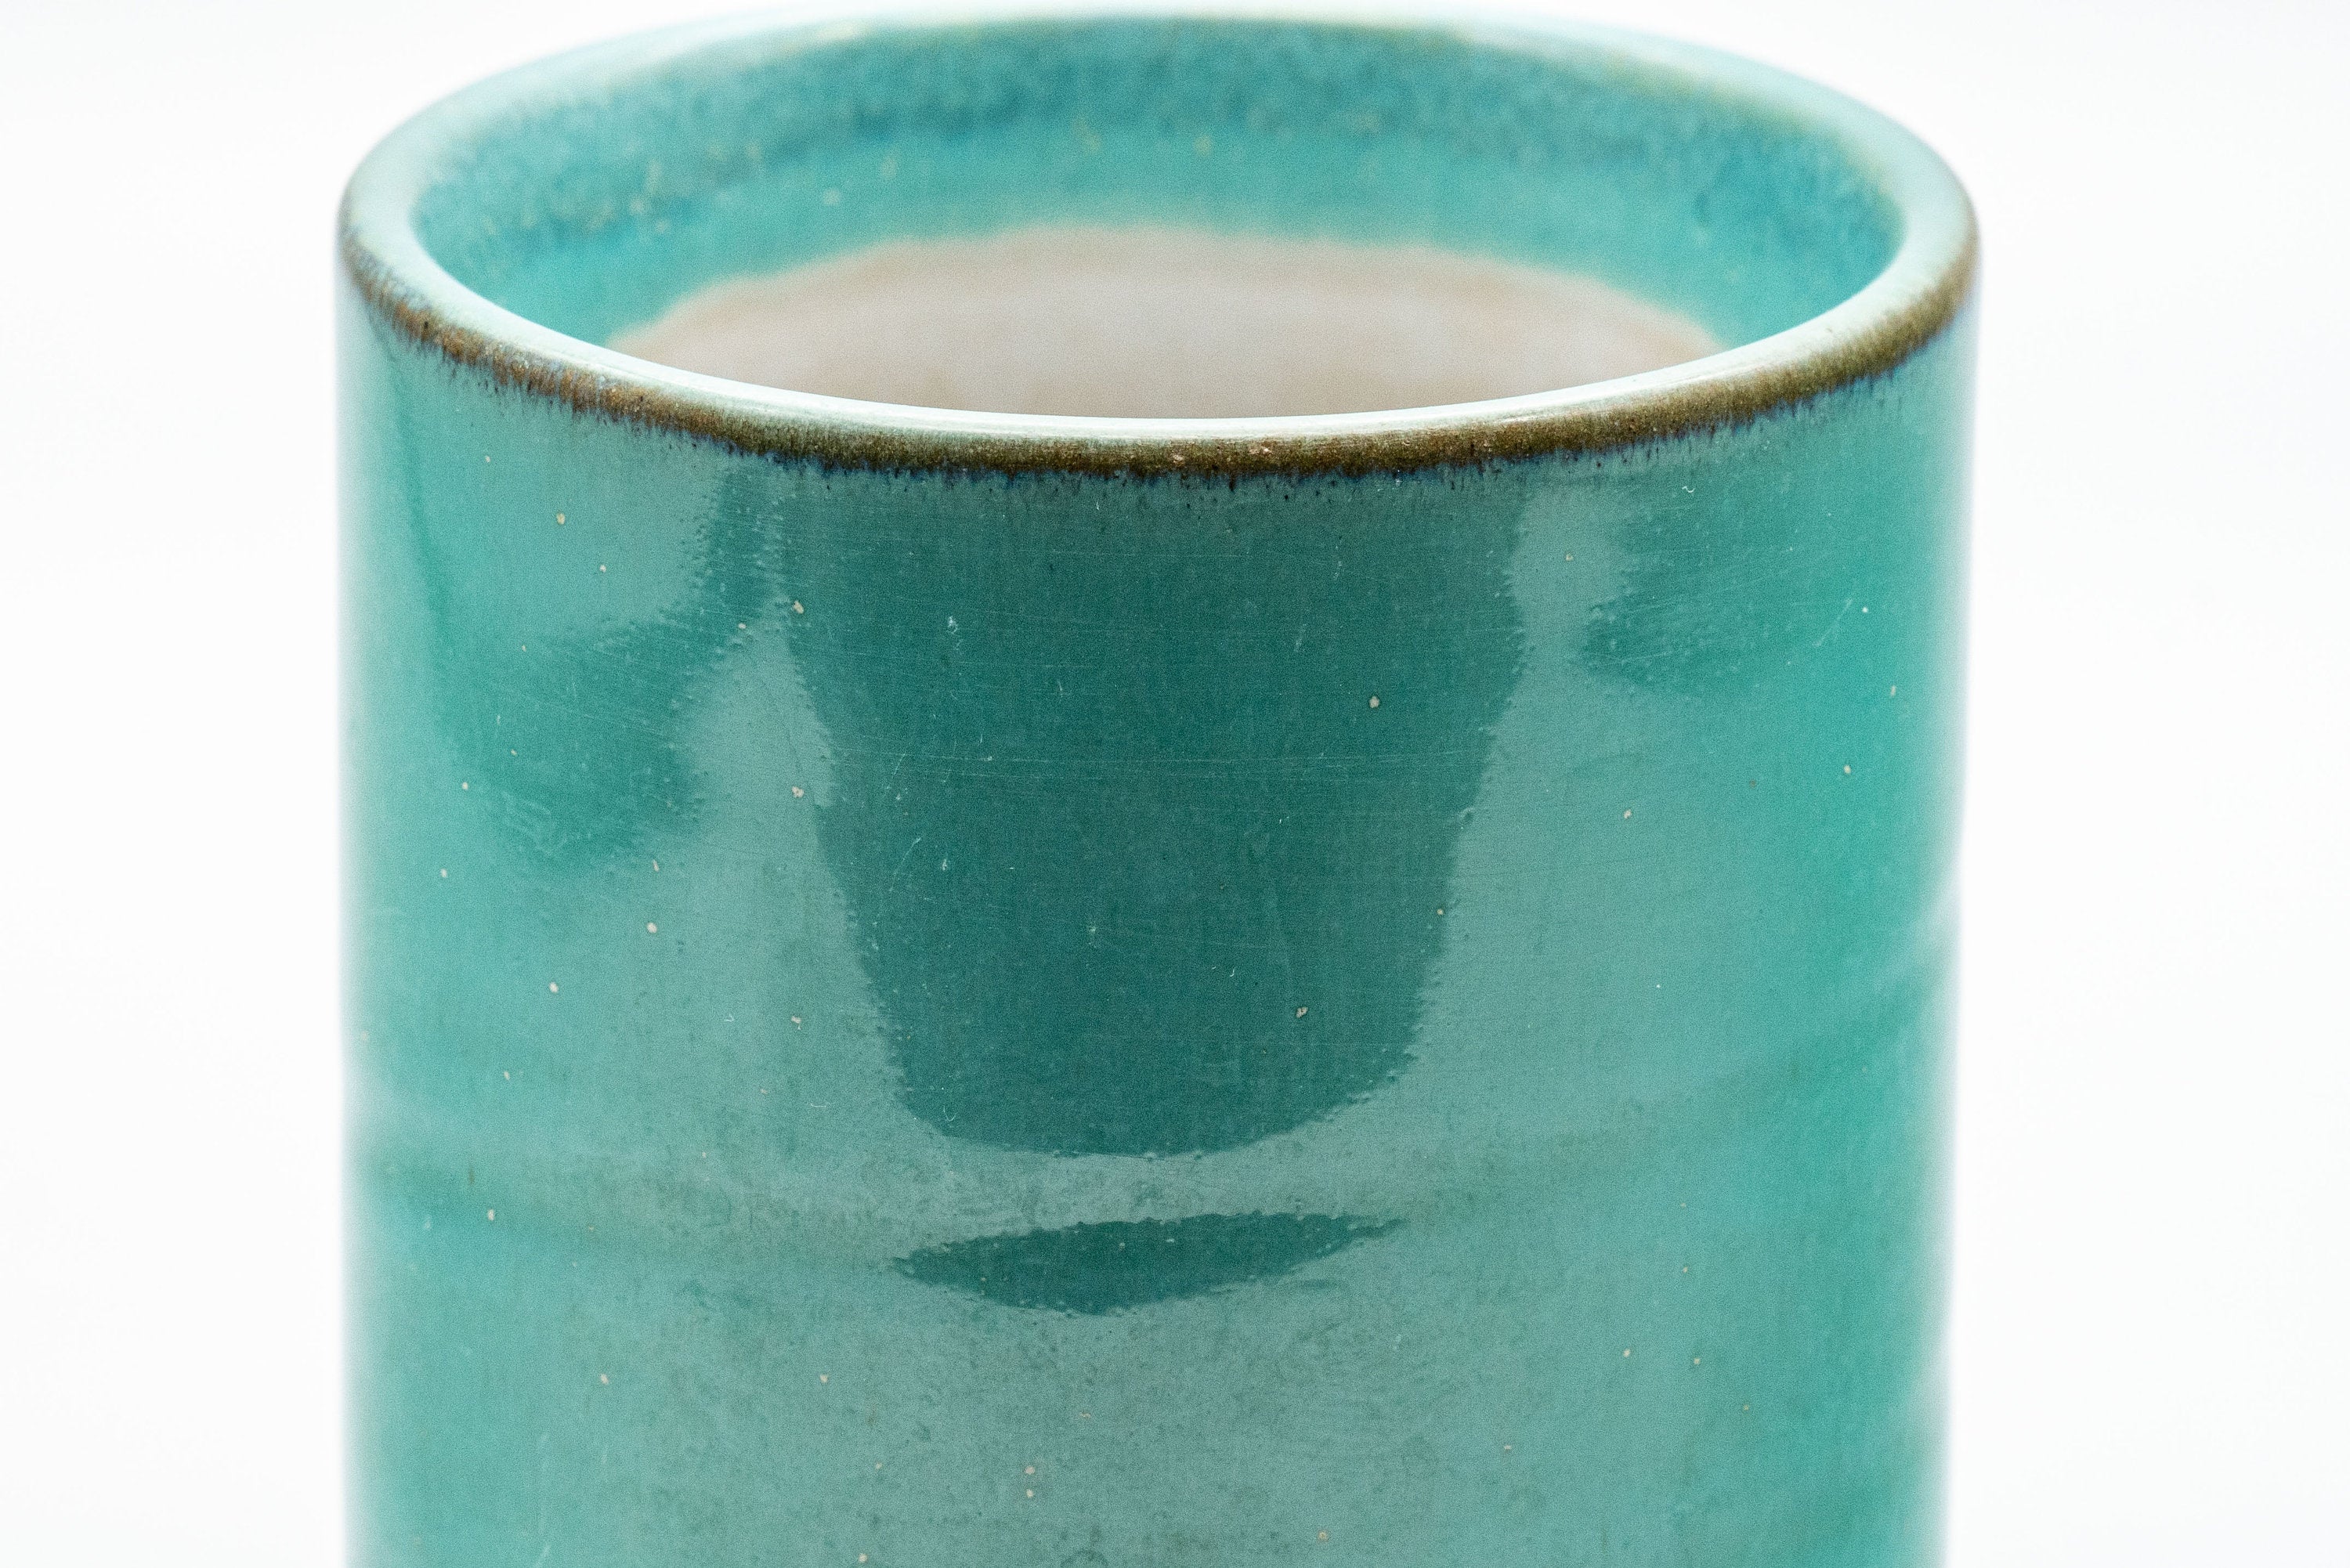 Japanese Teacups - Pair of Turquoise Tsutsu-gata Yunomi - 150ml